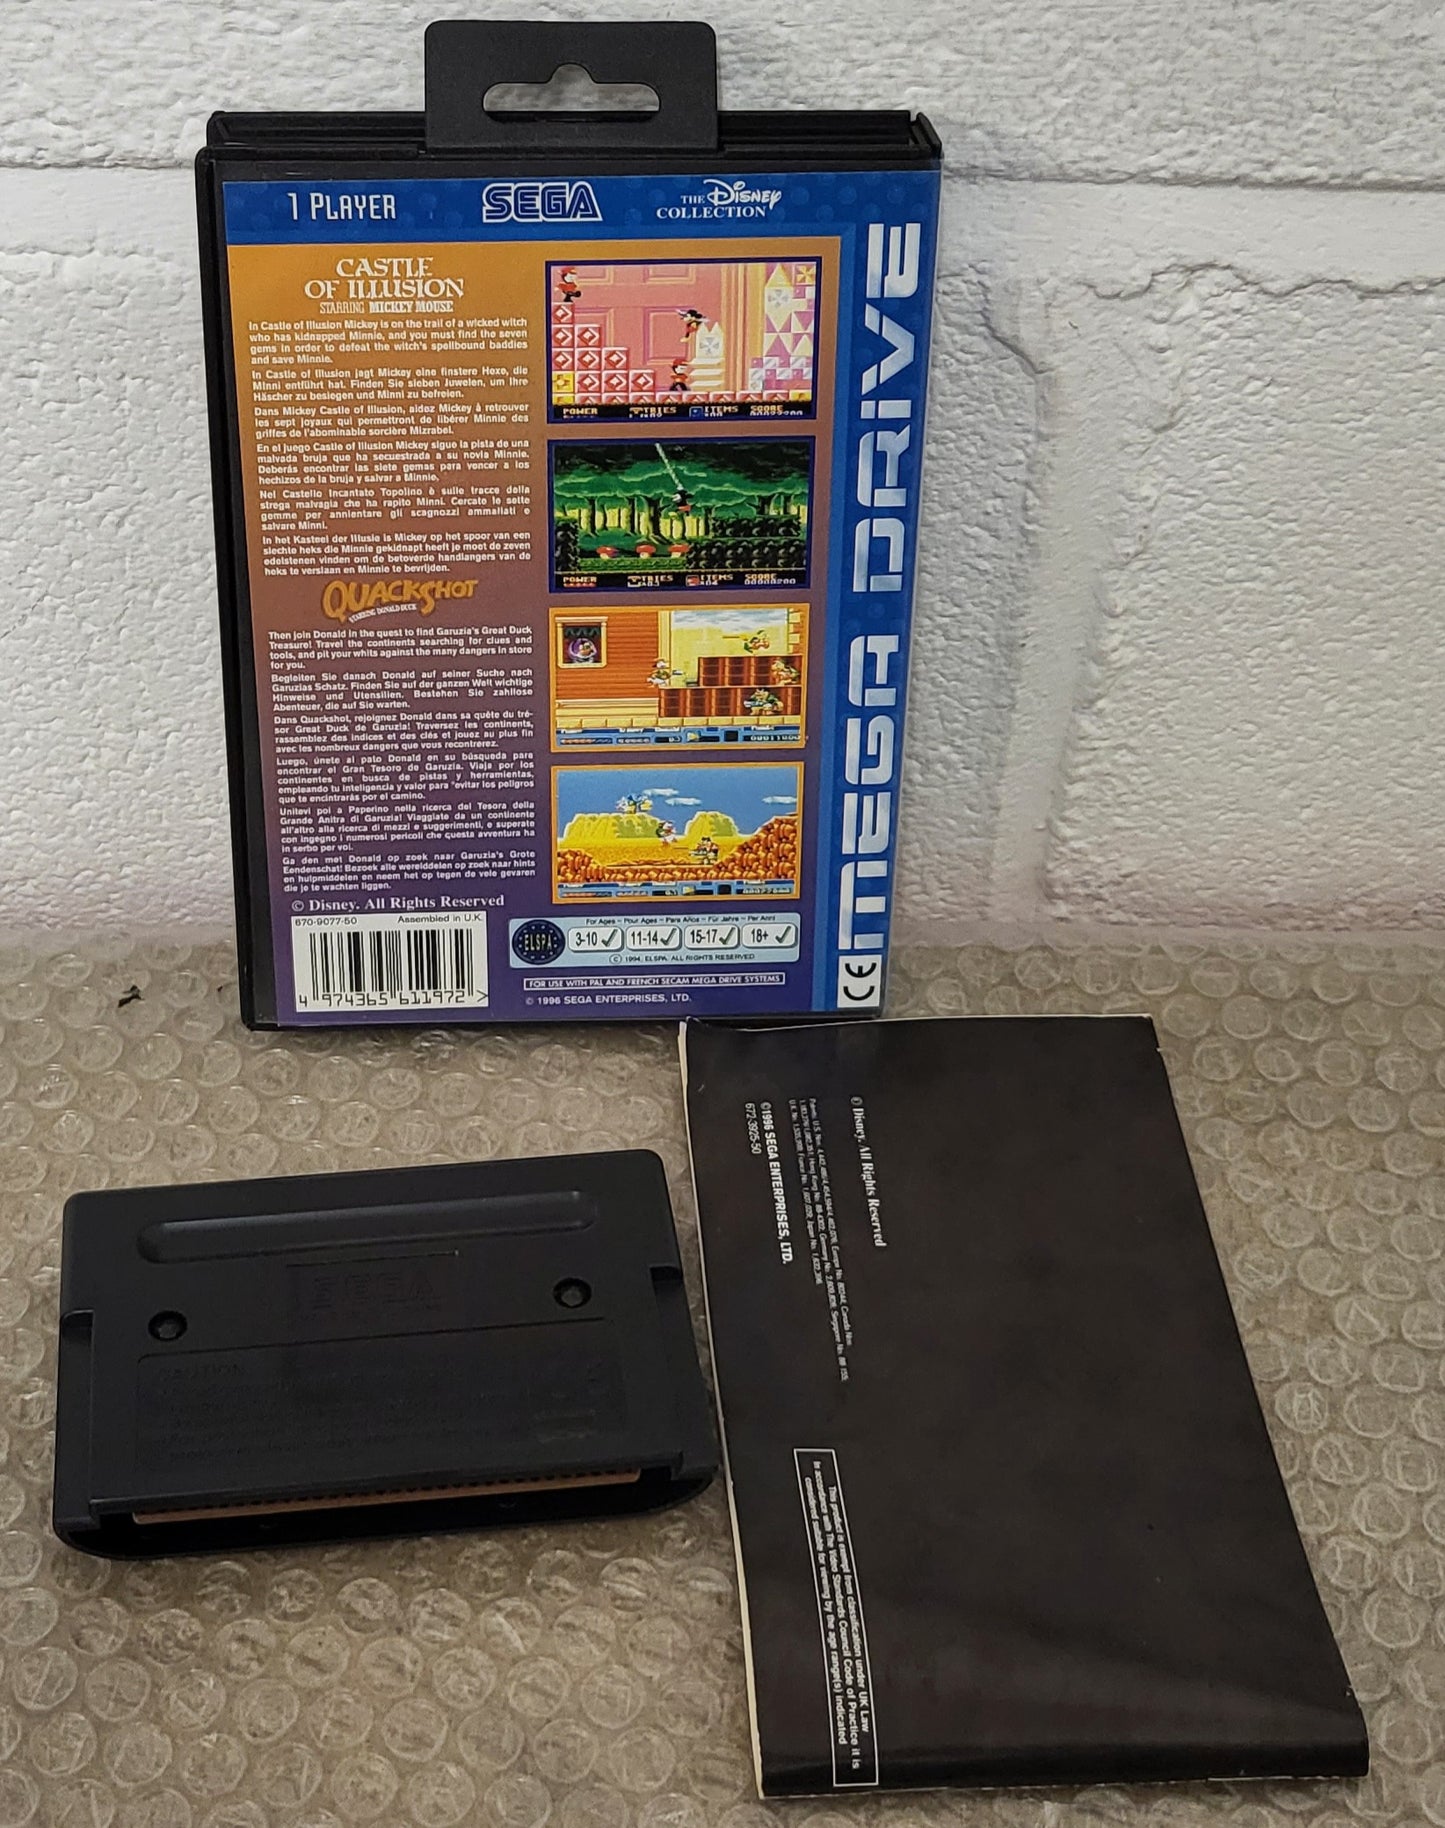 QuackShot & Castle of Illusion Multi Pack Sega Mega Drive Game